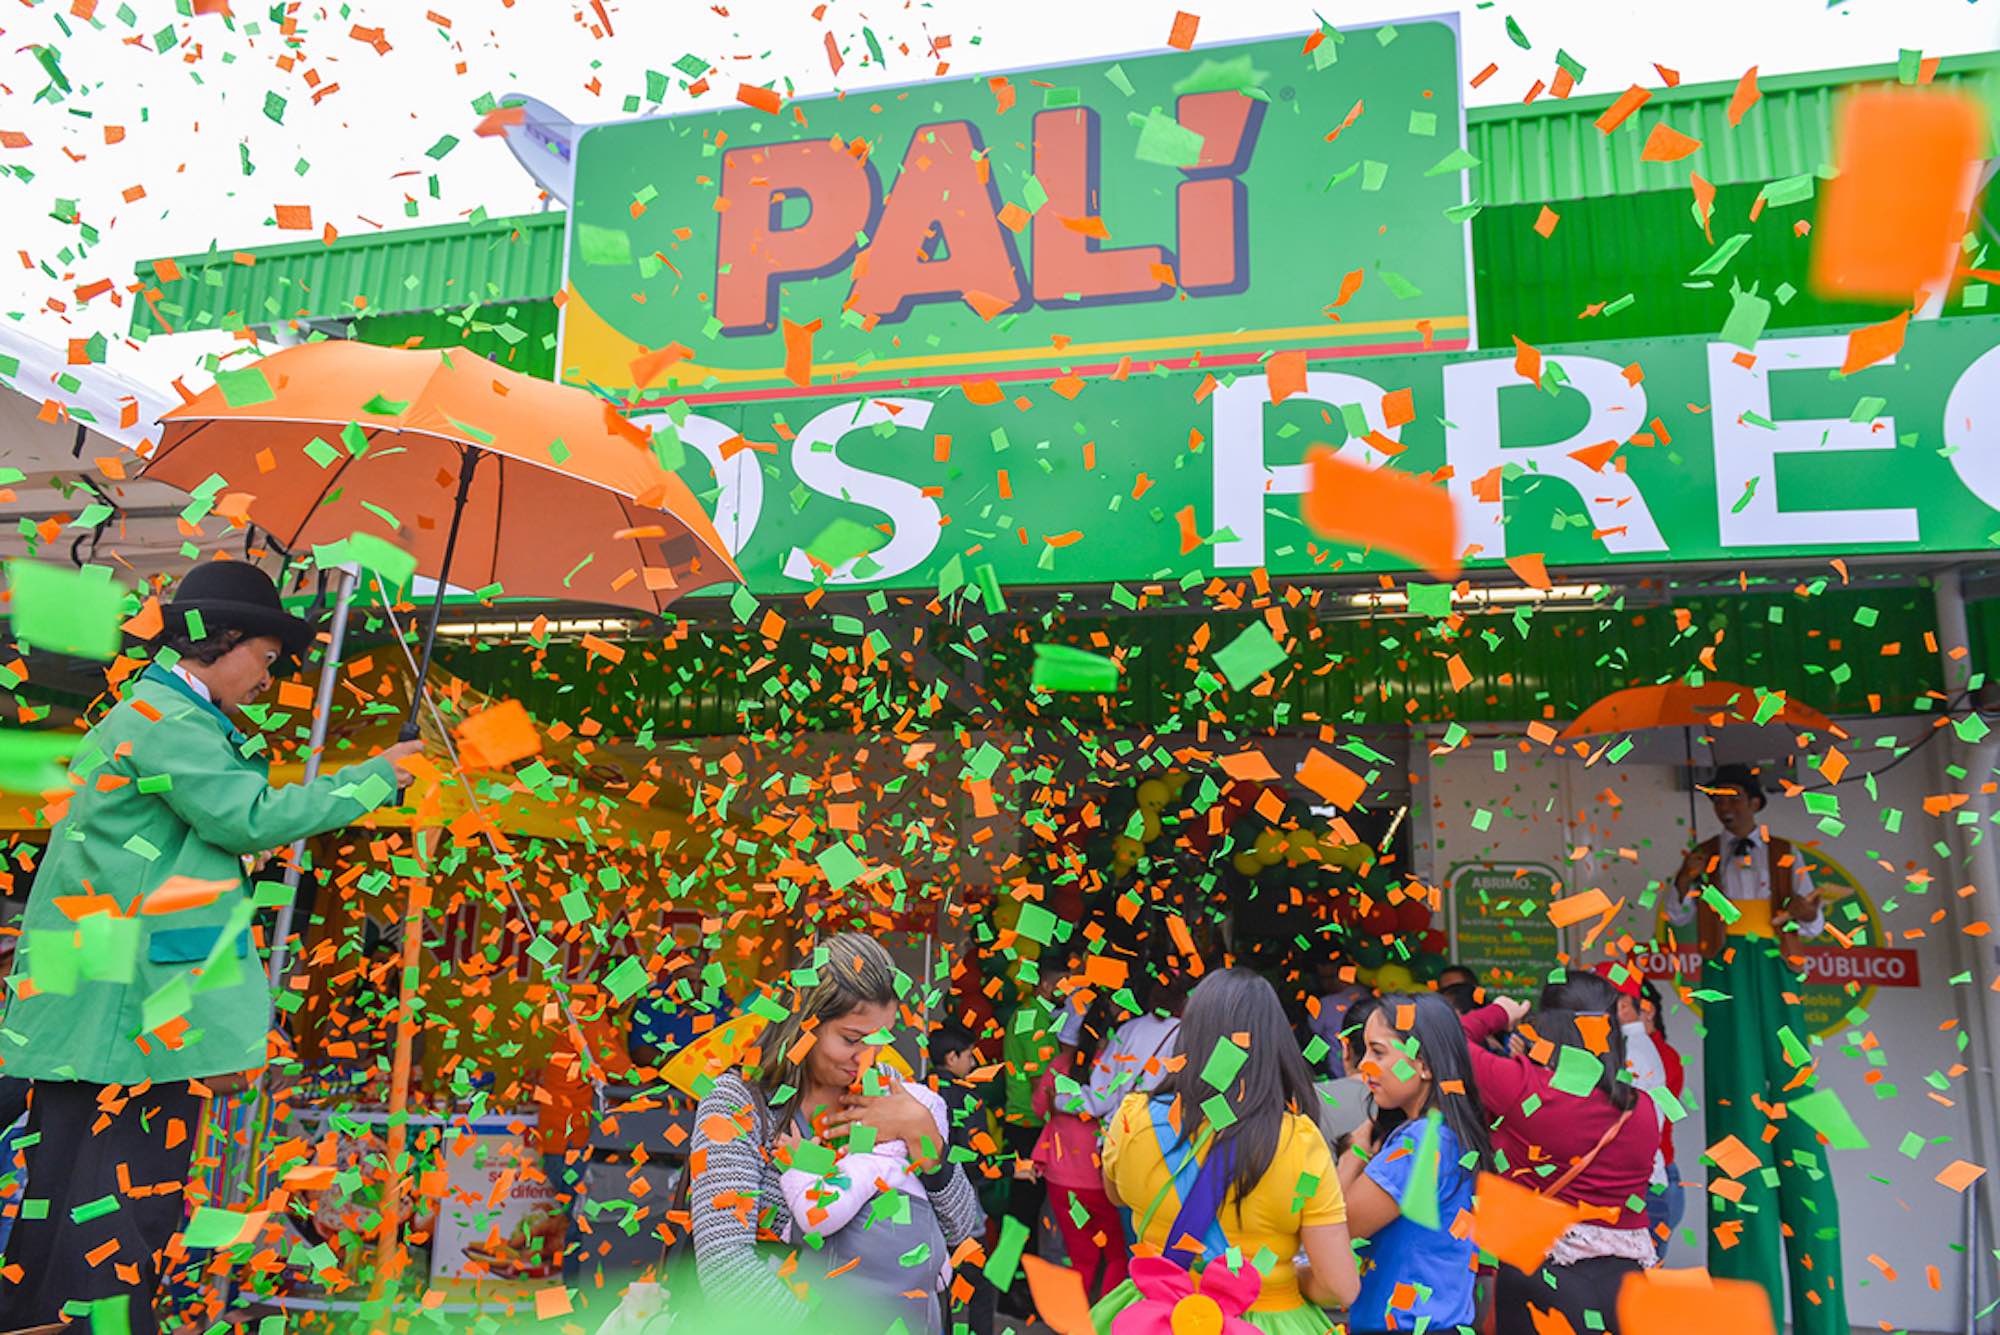 Palí expande su operación en Costa Rica con 4 nuevas tiendas